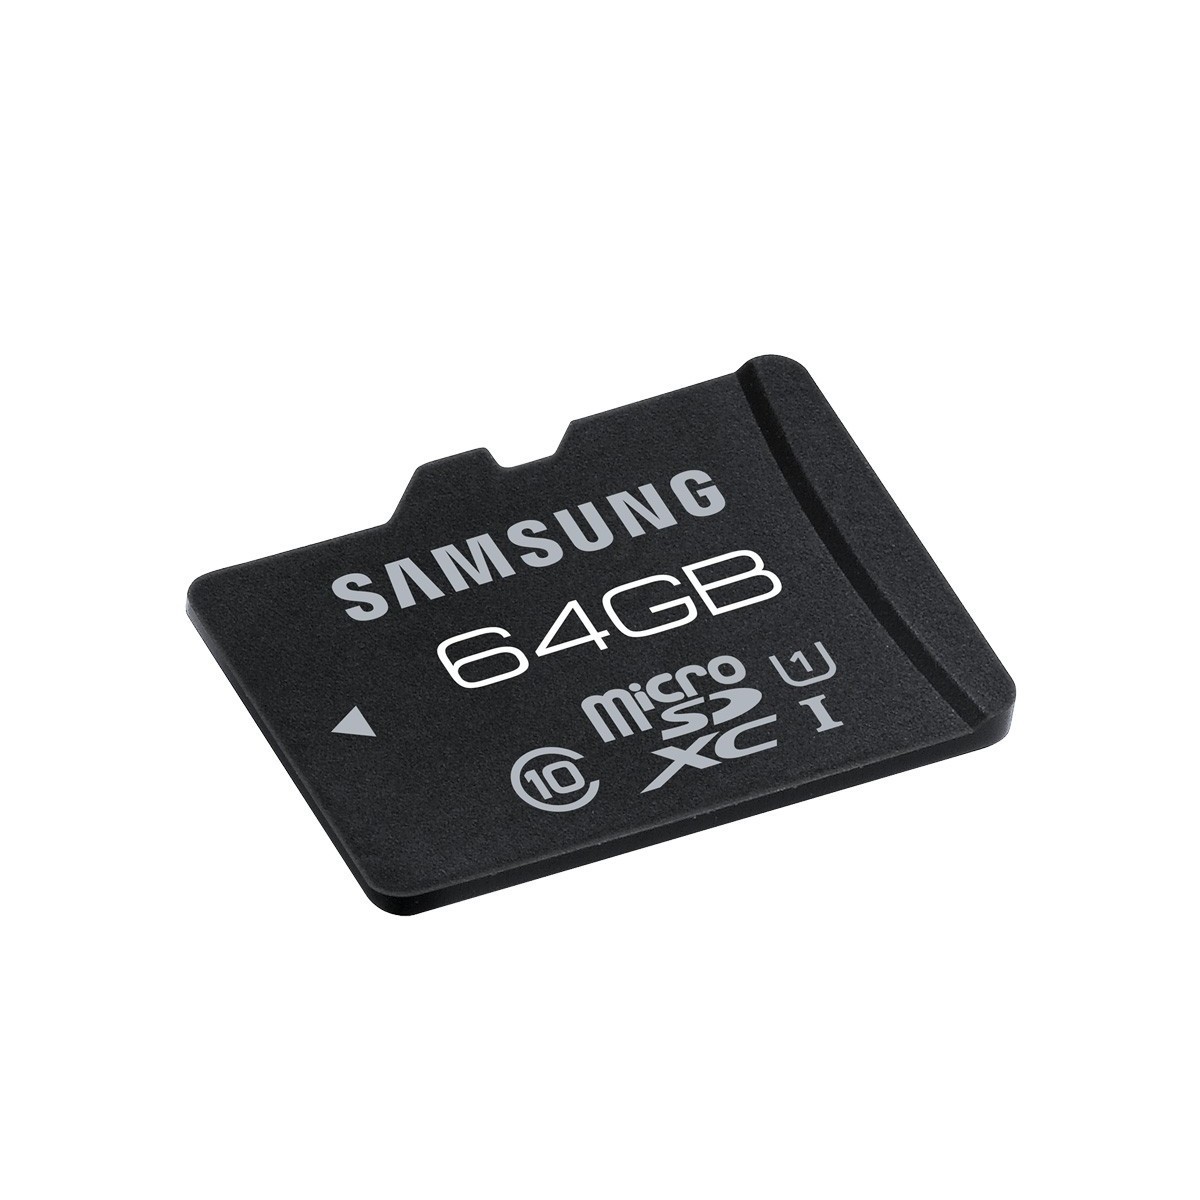 Карты микро сд 64 гб. Микро СД самсунг 32u. 32гб карта памяти Samsung MICROSD. Флешка микро СД 64. Флешка 64 ГБ микро SD.